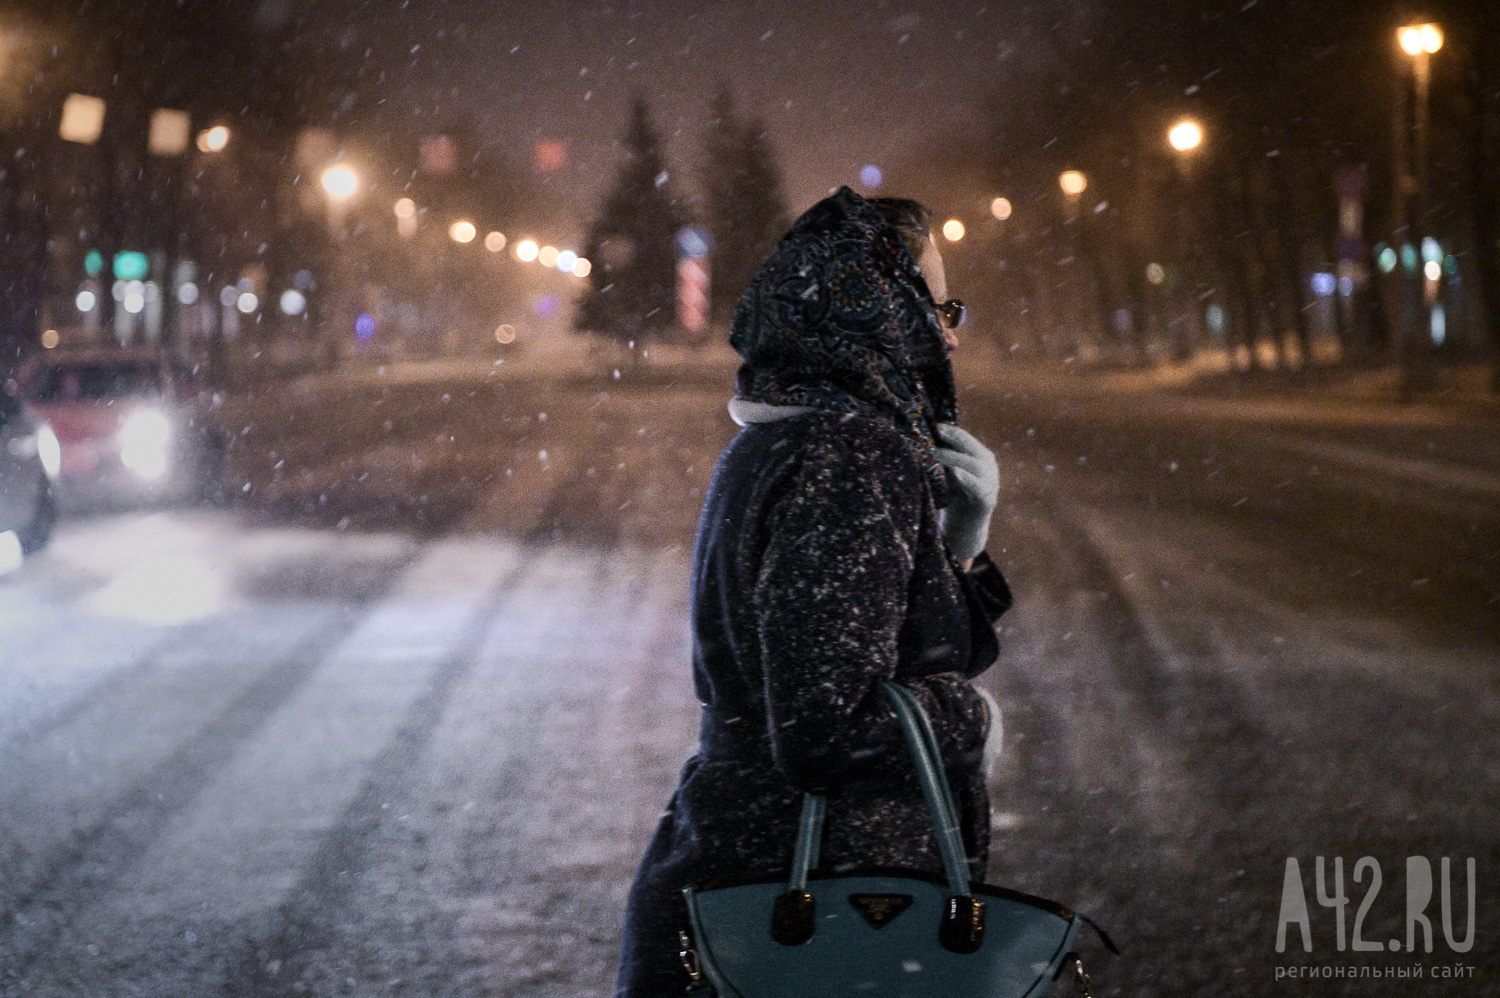 Последняя неделя года начнётся для кузбассовцев со снегопада и метели